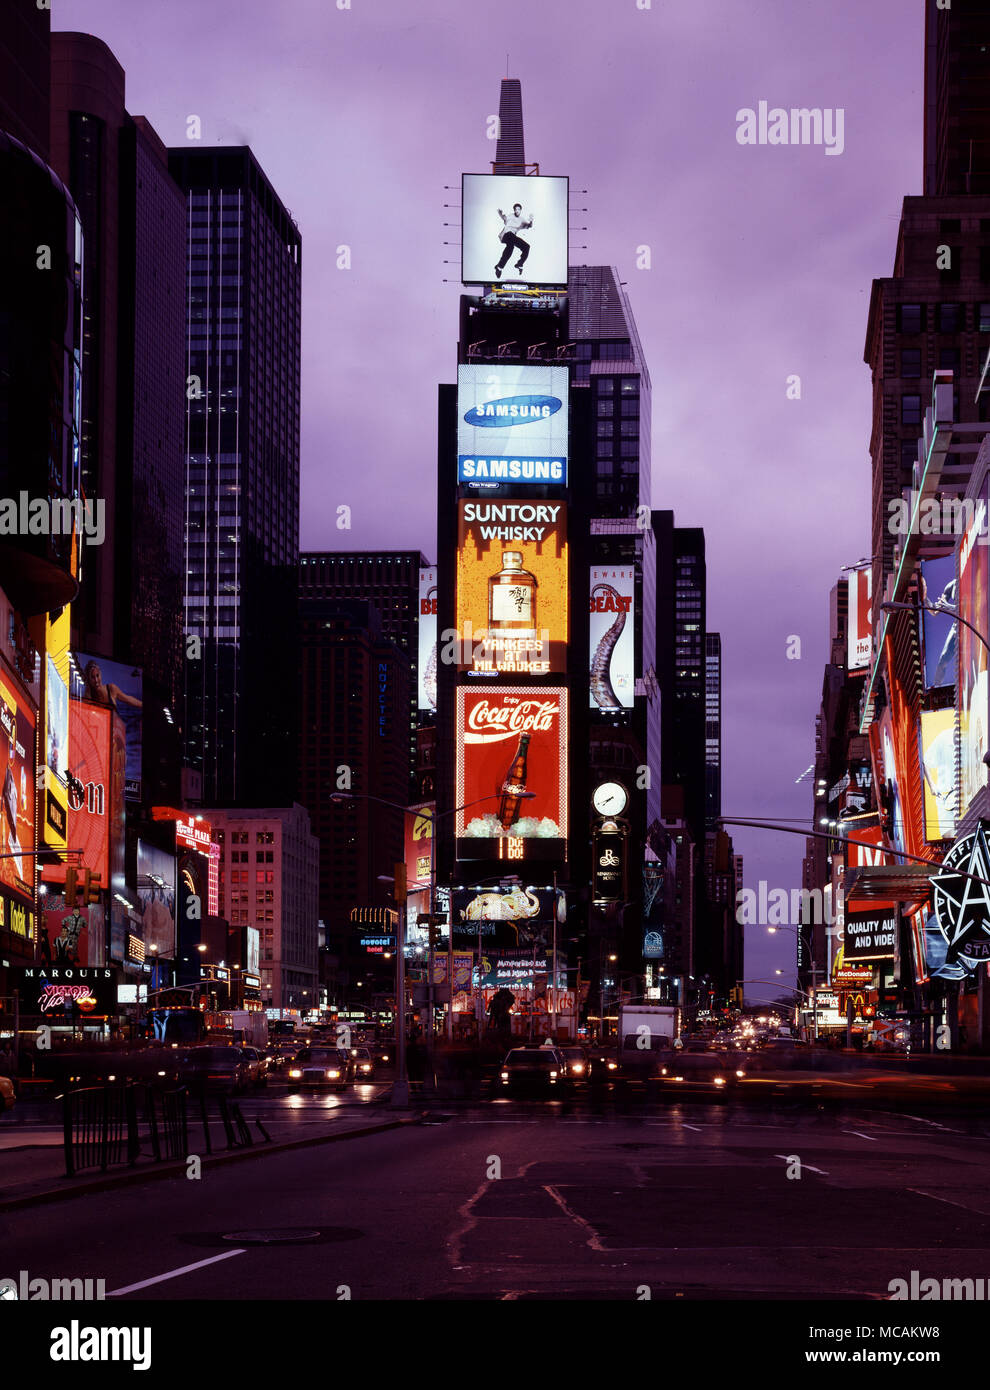 Times Square est un important carrefour commercial et un quartier de Midtown Manhattan, à l'intersection de Broadway (maintenant transformée en une zone piétonne plaza) et la 7ème Avenue et 42ème à l'Ouest s'étendant de la 47e Rue Ouest. Times Square ? Iconifiée comme le carrefour du monde au centre de l'Univers et la manière dont le grand blanc est le moyeu d'éclairées du quartier des théâtres de Broadway, l'une des intersections les plus achalandées du monde, piétons et un centre majeur de l'industrie mondiale du divertissement Banque D'Images